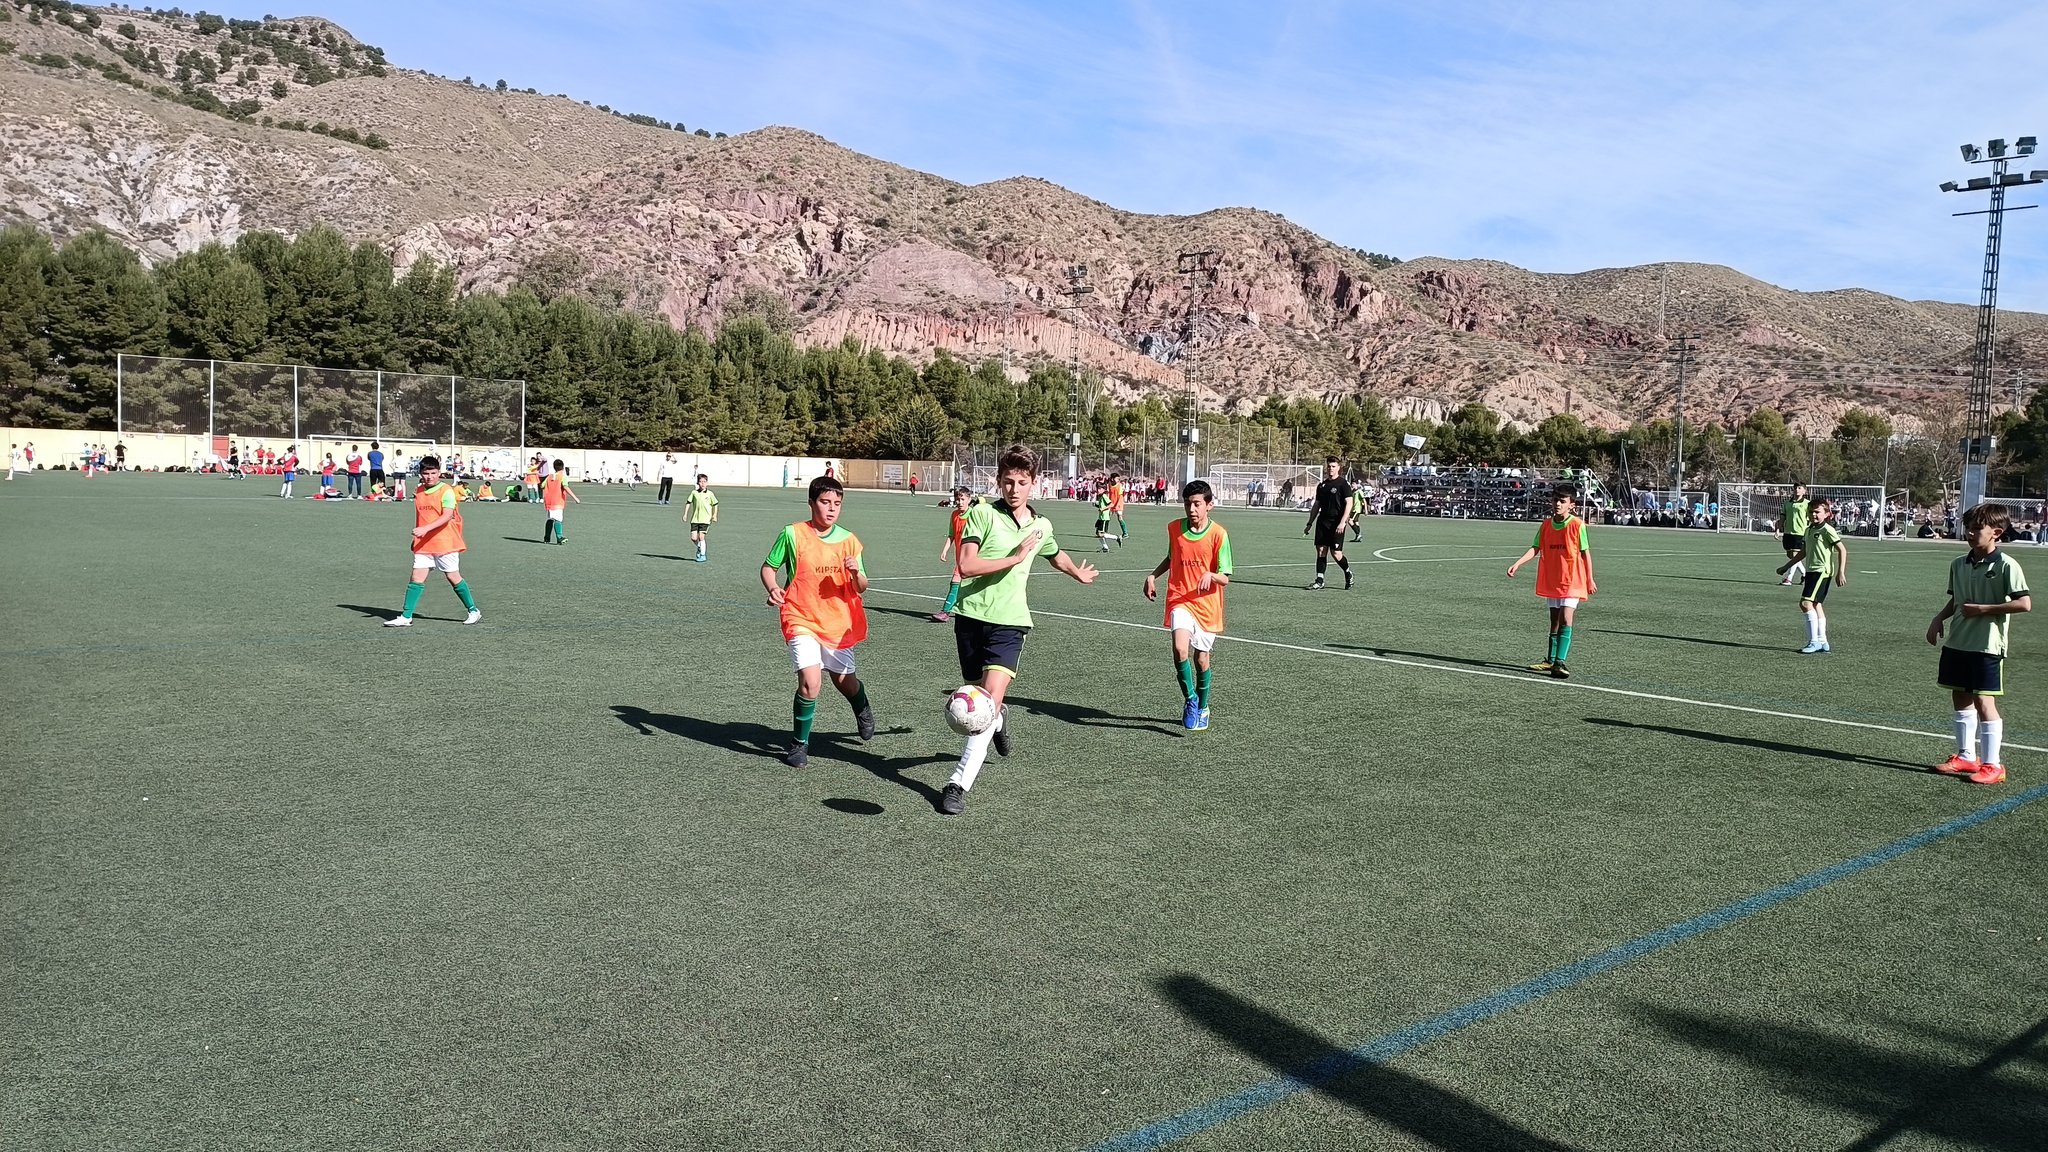 El II Torneo de Fútbol 8 organizado por Ucoerm congrega en Lorca a cerca de 1.500 alumnos/as de cooperativas 